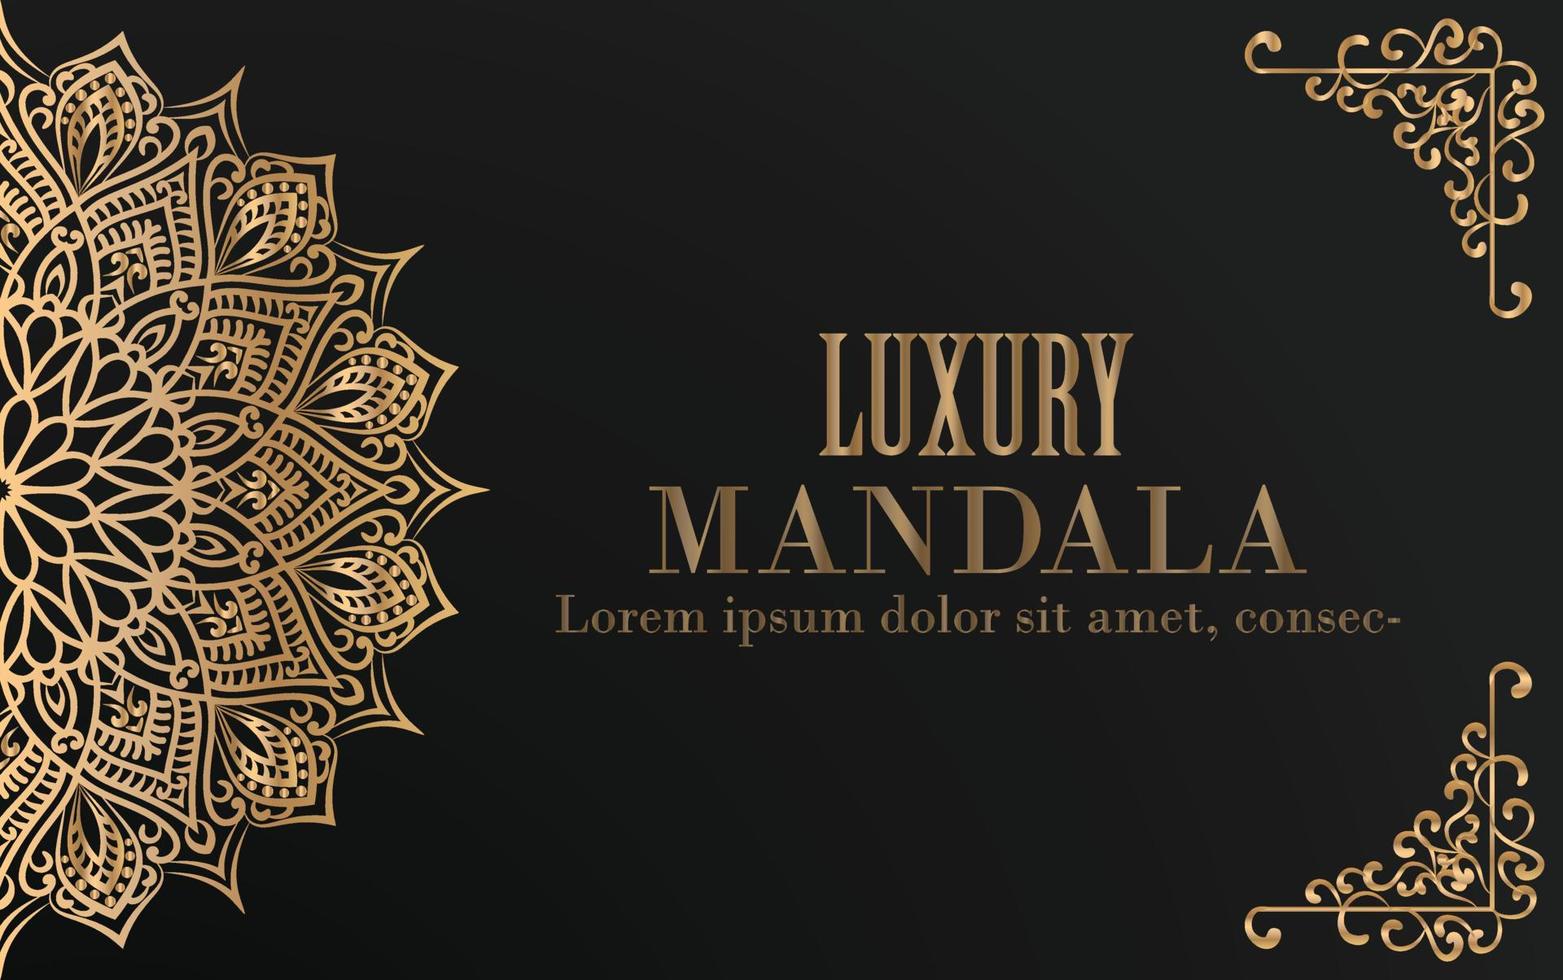 invitation de luxe au mandala doré avec fond noir. vecteur